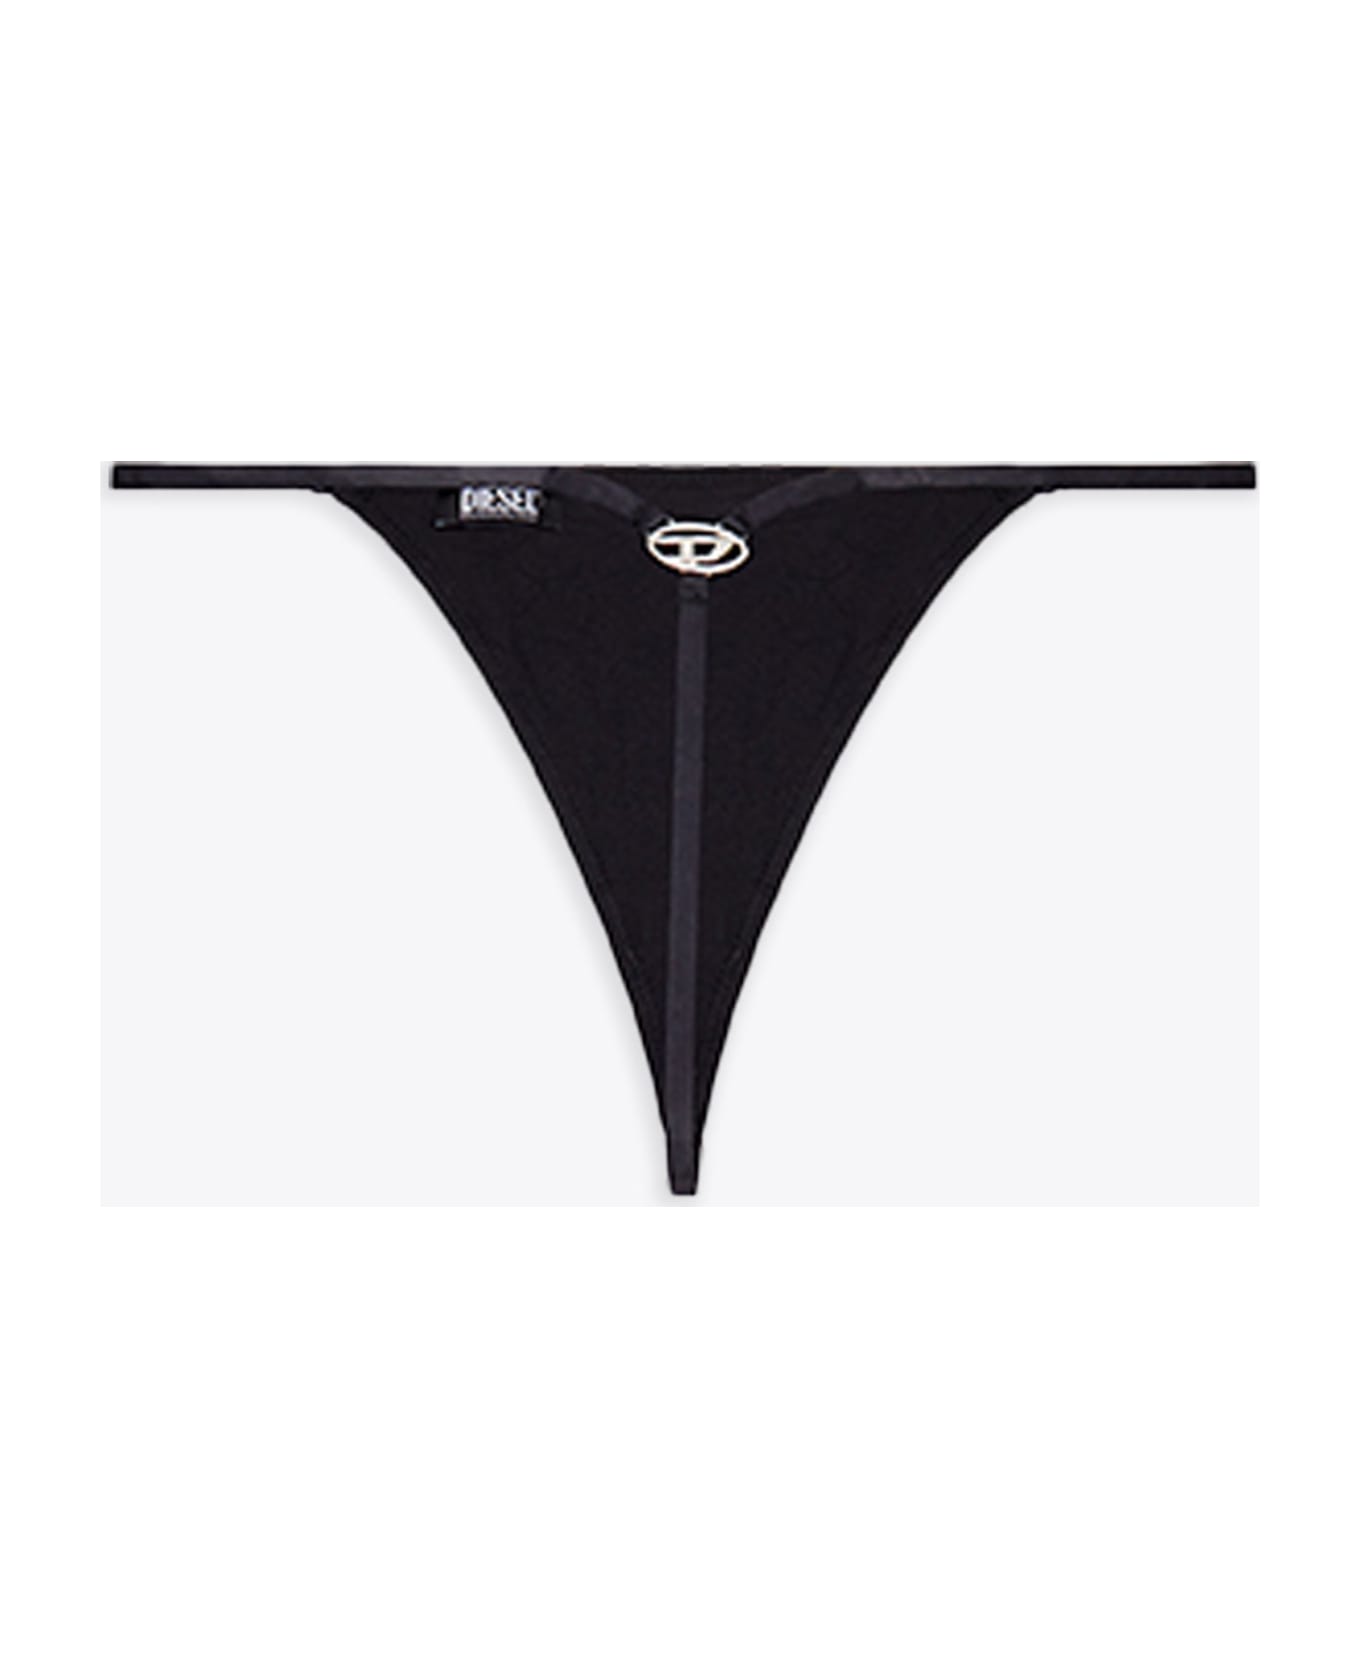 Diesel Ufst-d-string Black thong with metal Oval D logo - Ufst D-String - Nero ショーツ